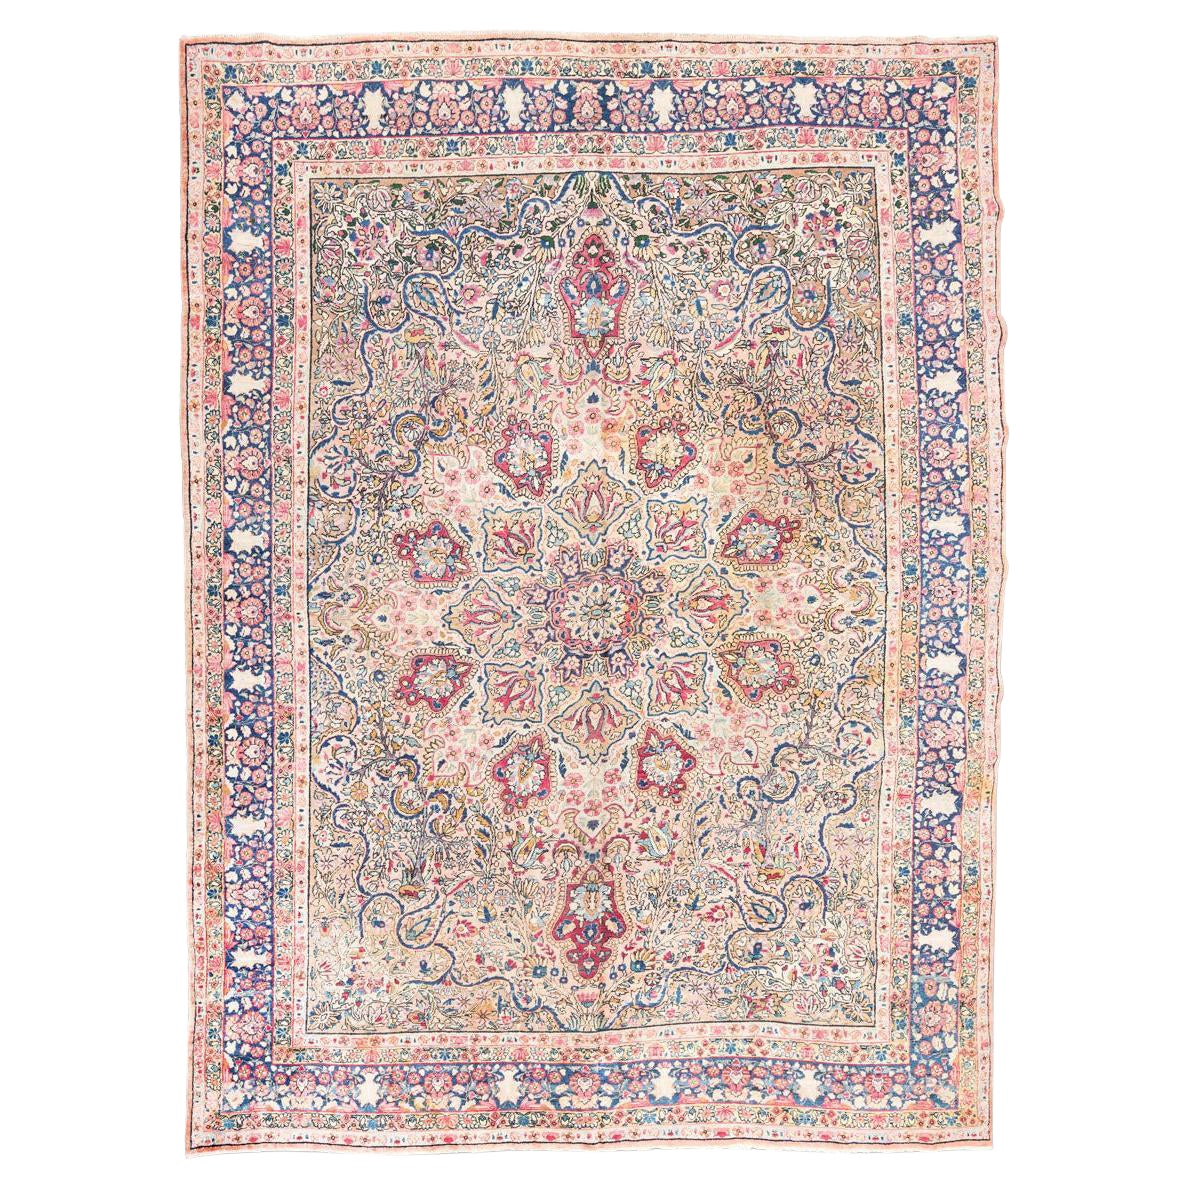 Handgefertigter Kirman-Teppich aus Wolle mit klassischen Blumen, Blättern und Zweigen im Design.